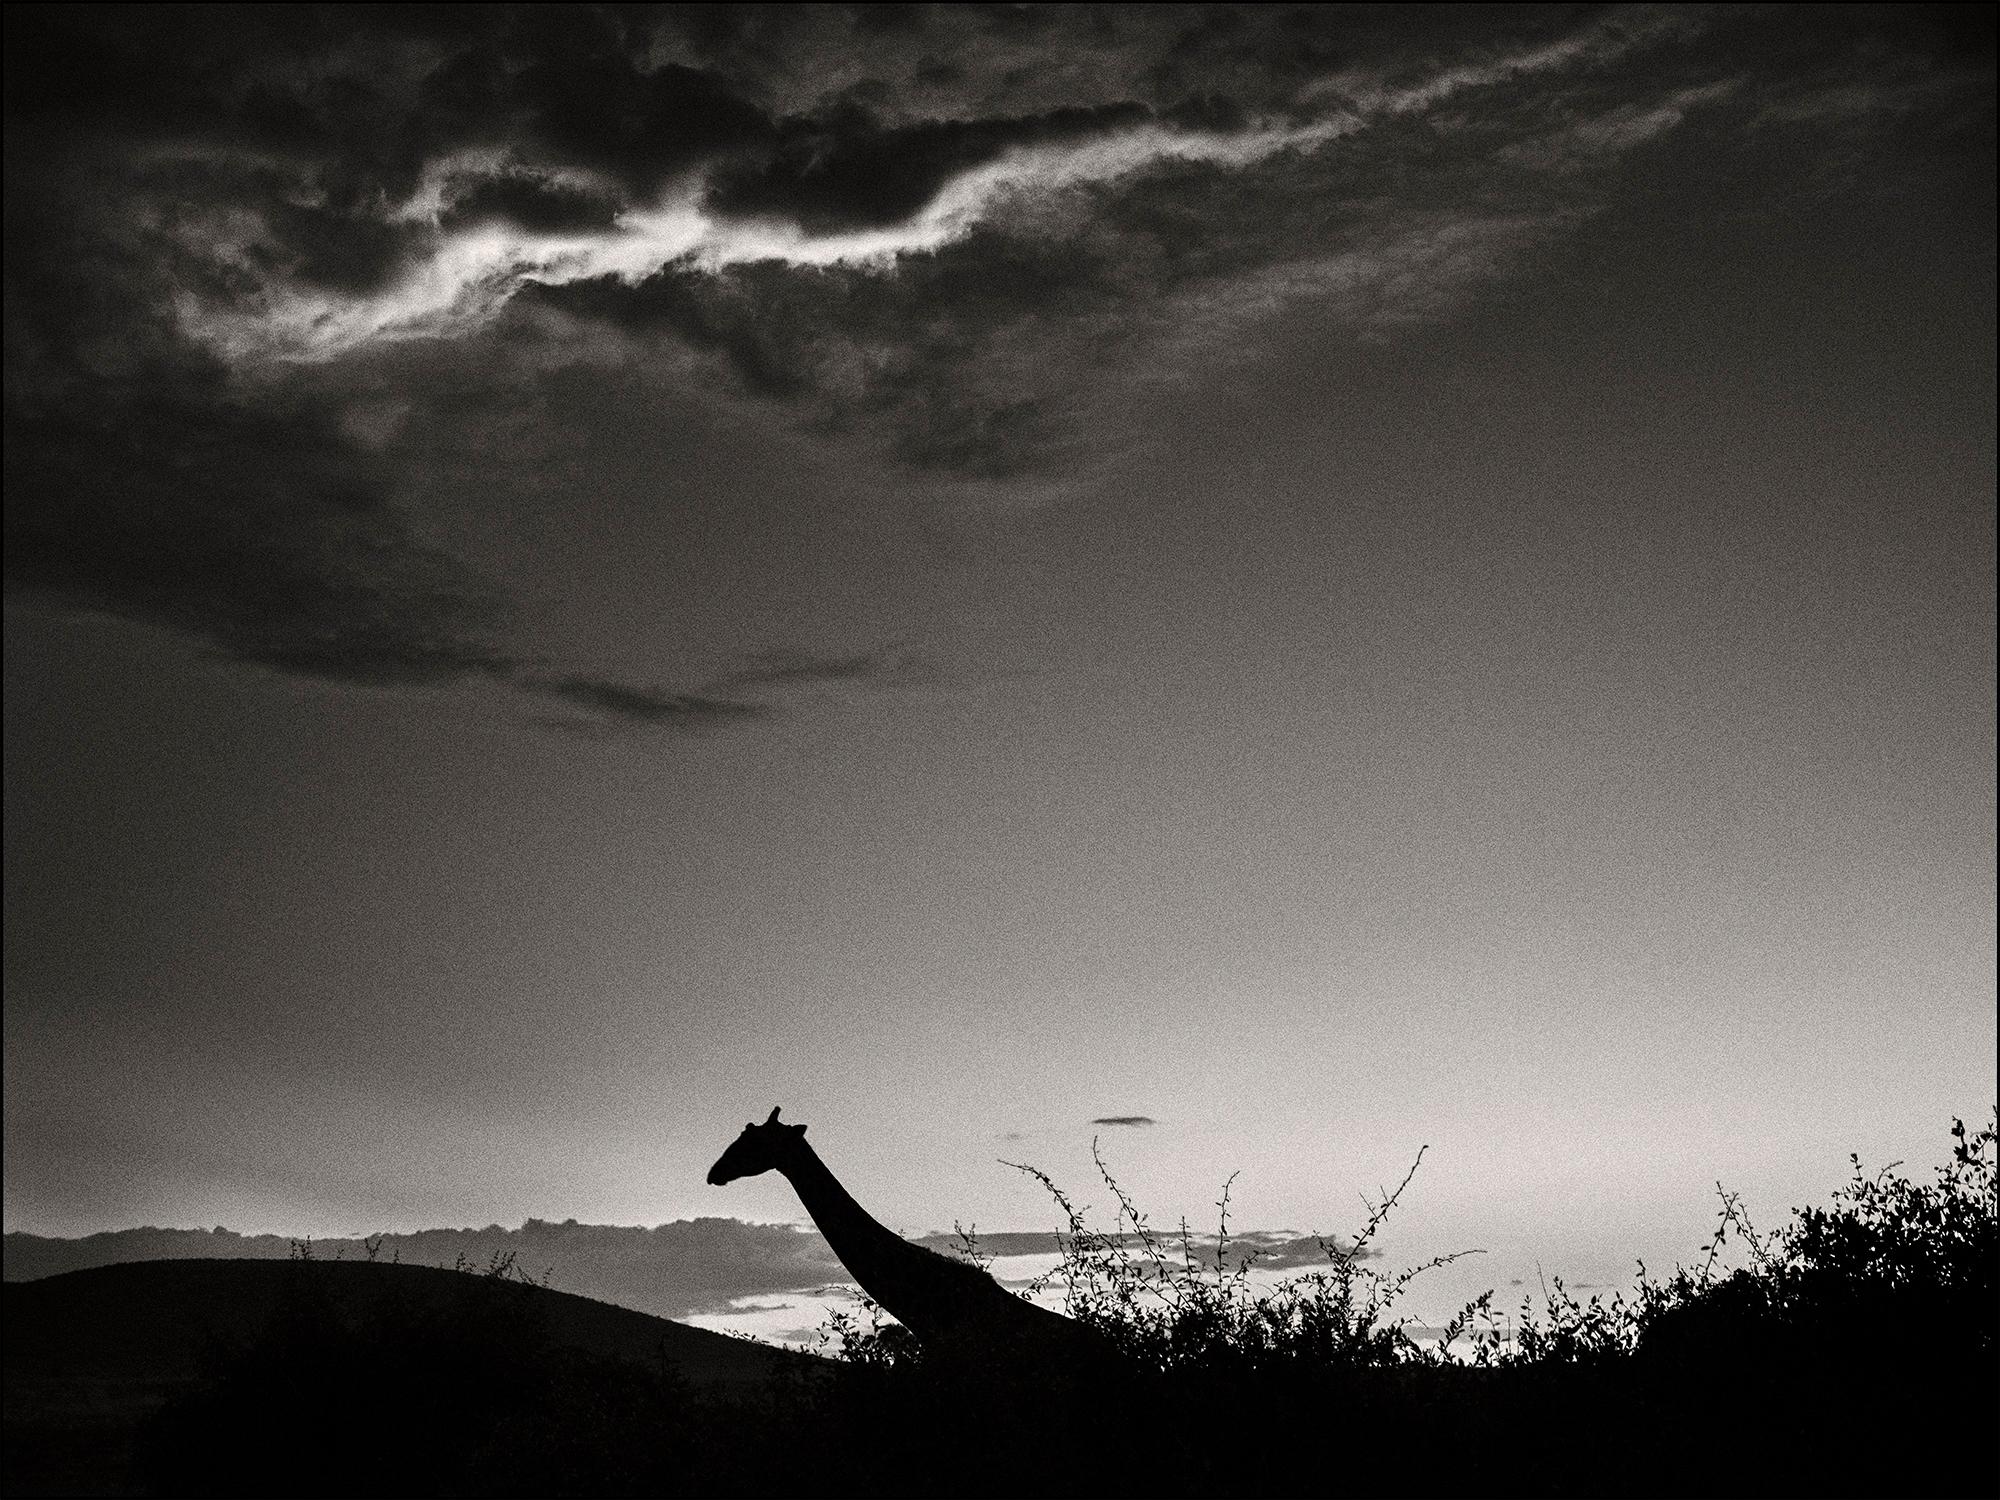 Landscape Photograph Joachim Schmeisser - Le chevalier sombre, animal, faune sauvage, photographie en noir et blanc, girafe